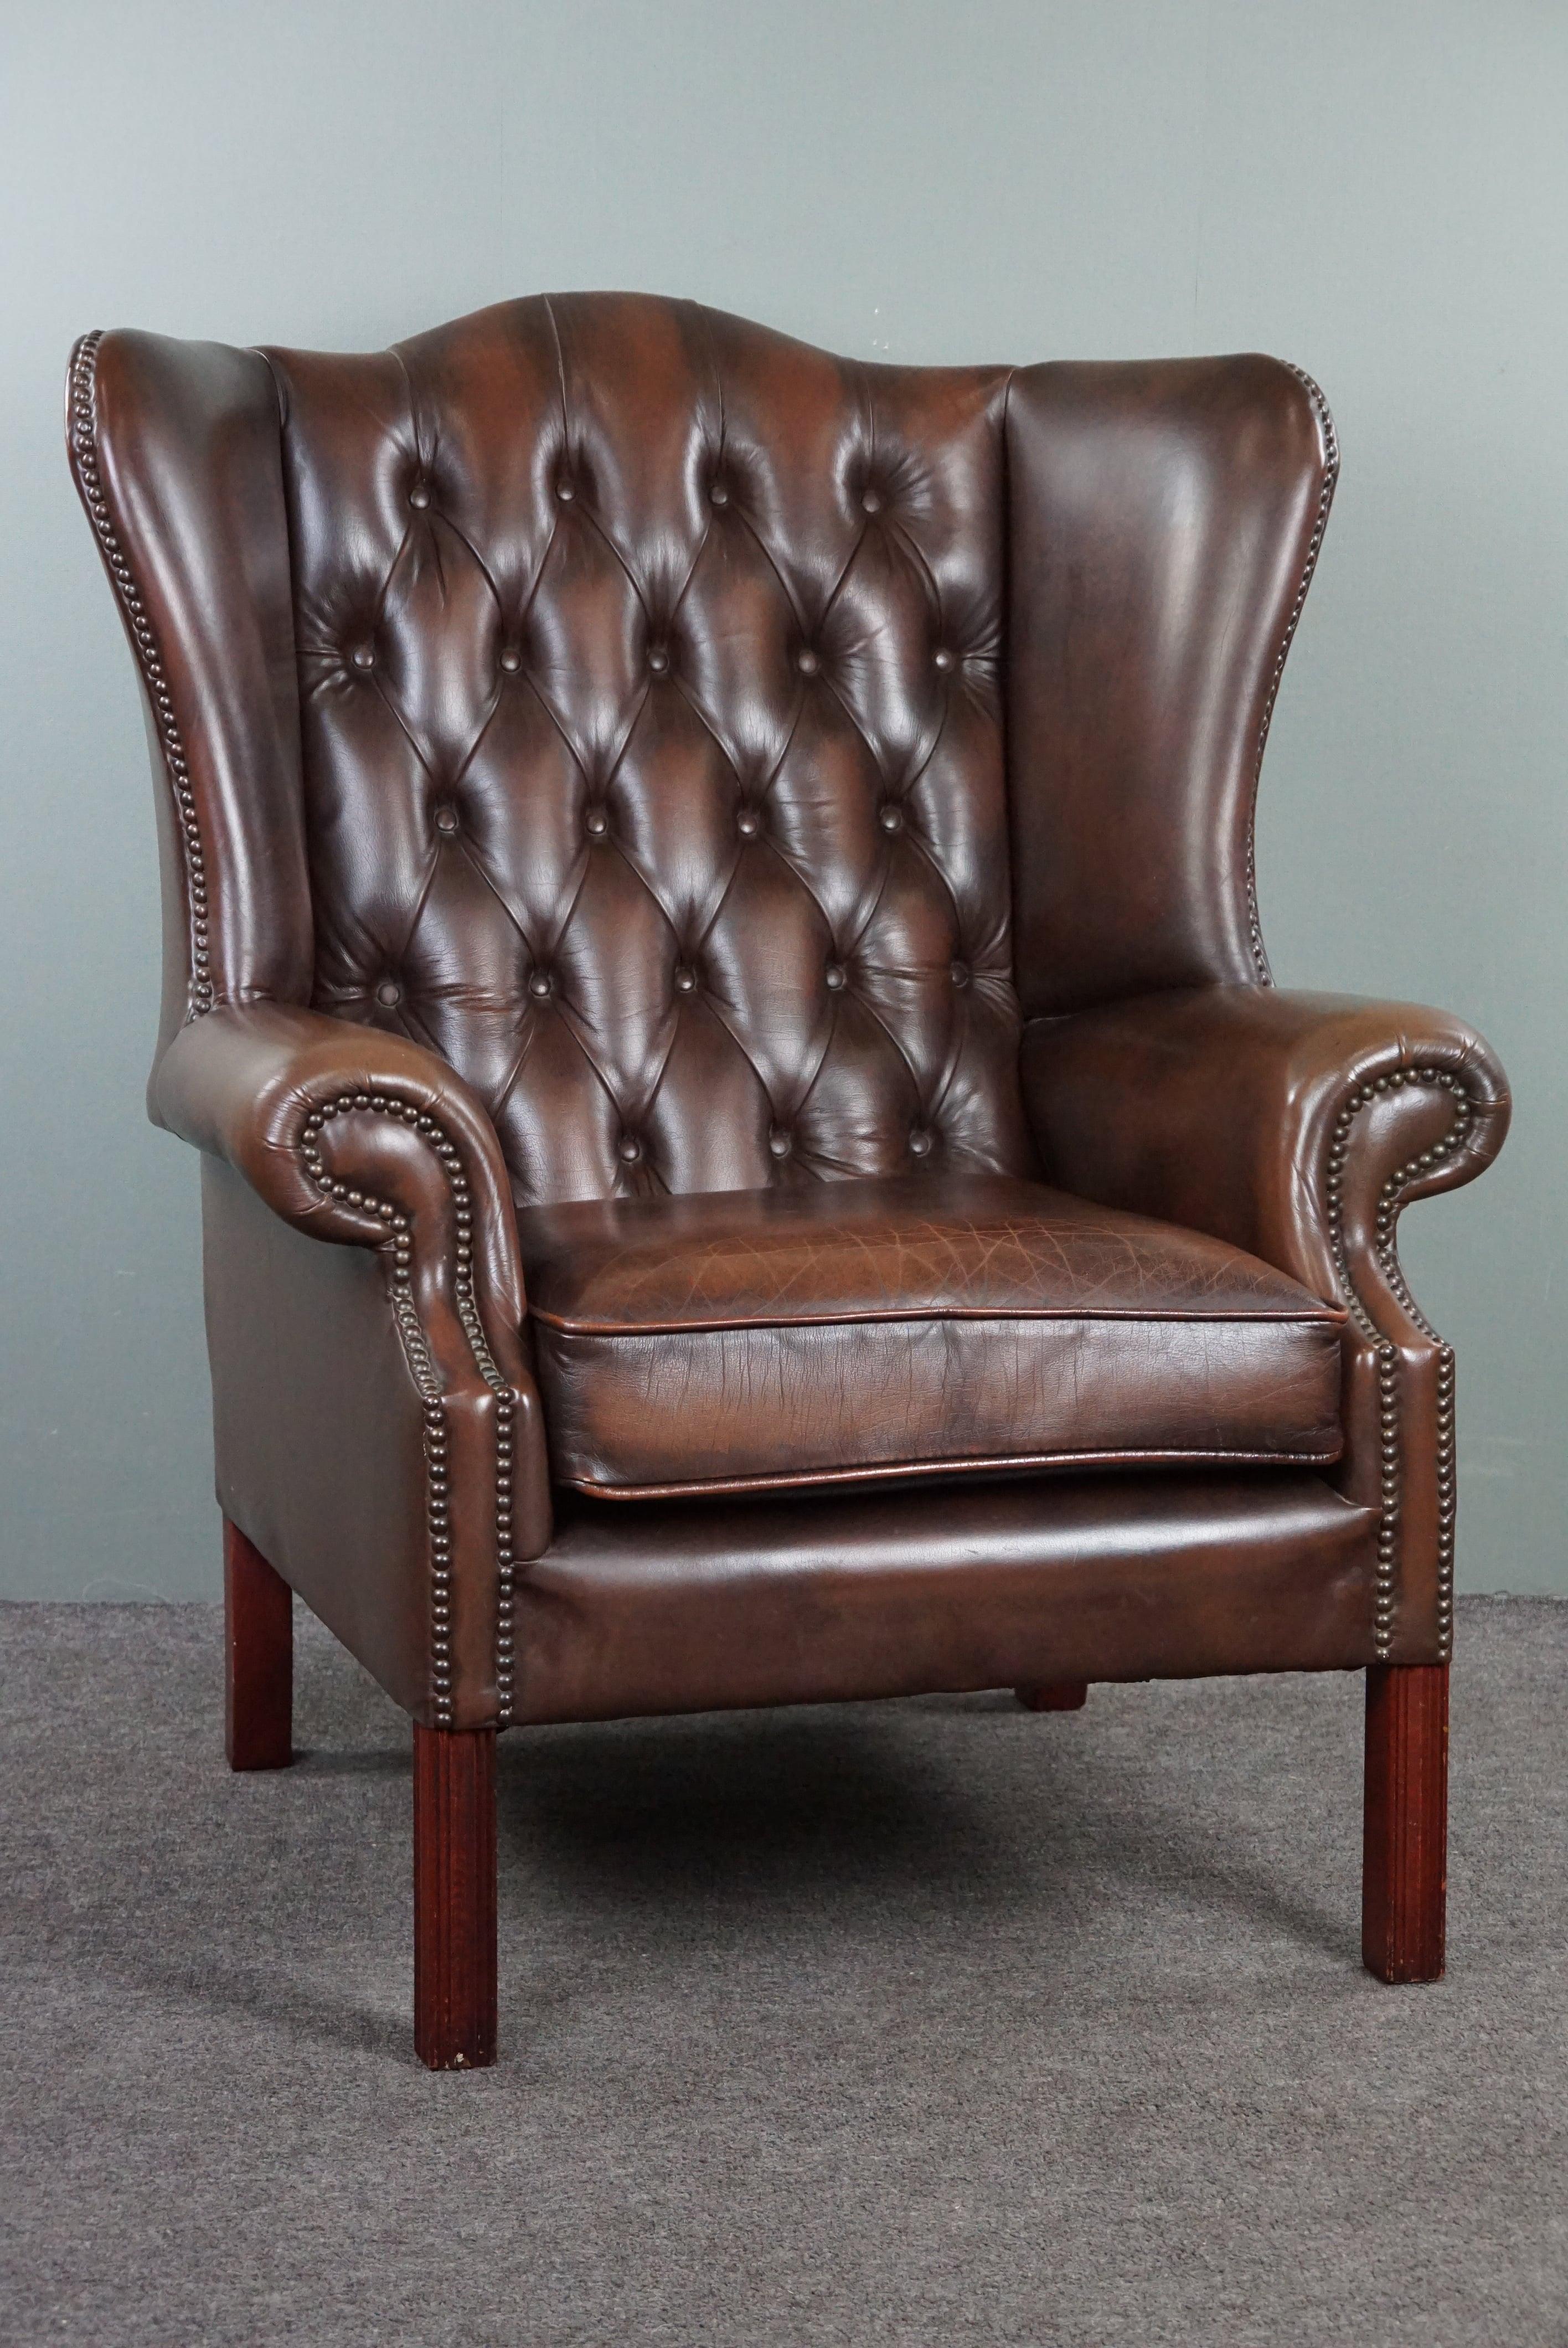 C'est avec fierté que nous vous proposons ce fantastique fauteuil à oreilles Chesterfield.
Ce fauteuil offre une qualité d'assise exceptionnelle, et la combinaison du cuir, des clous décoratifs et des pieds en bois en fait un véritable objet de